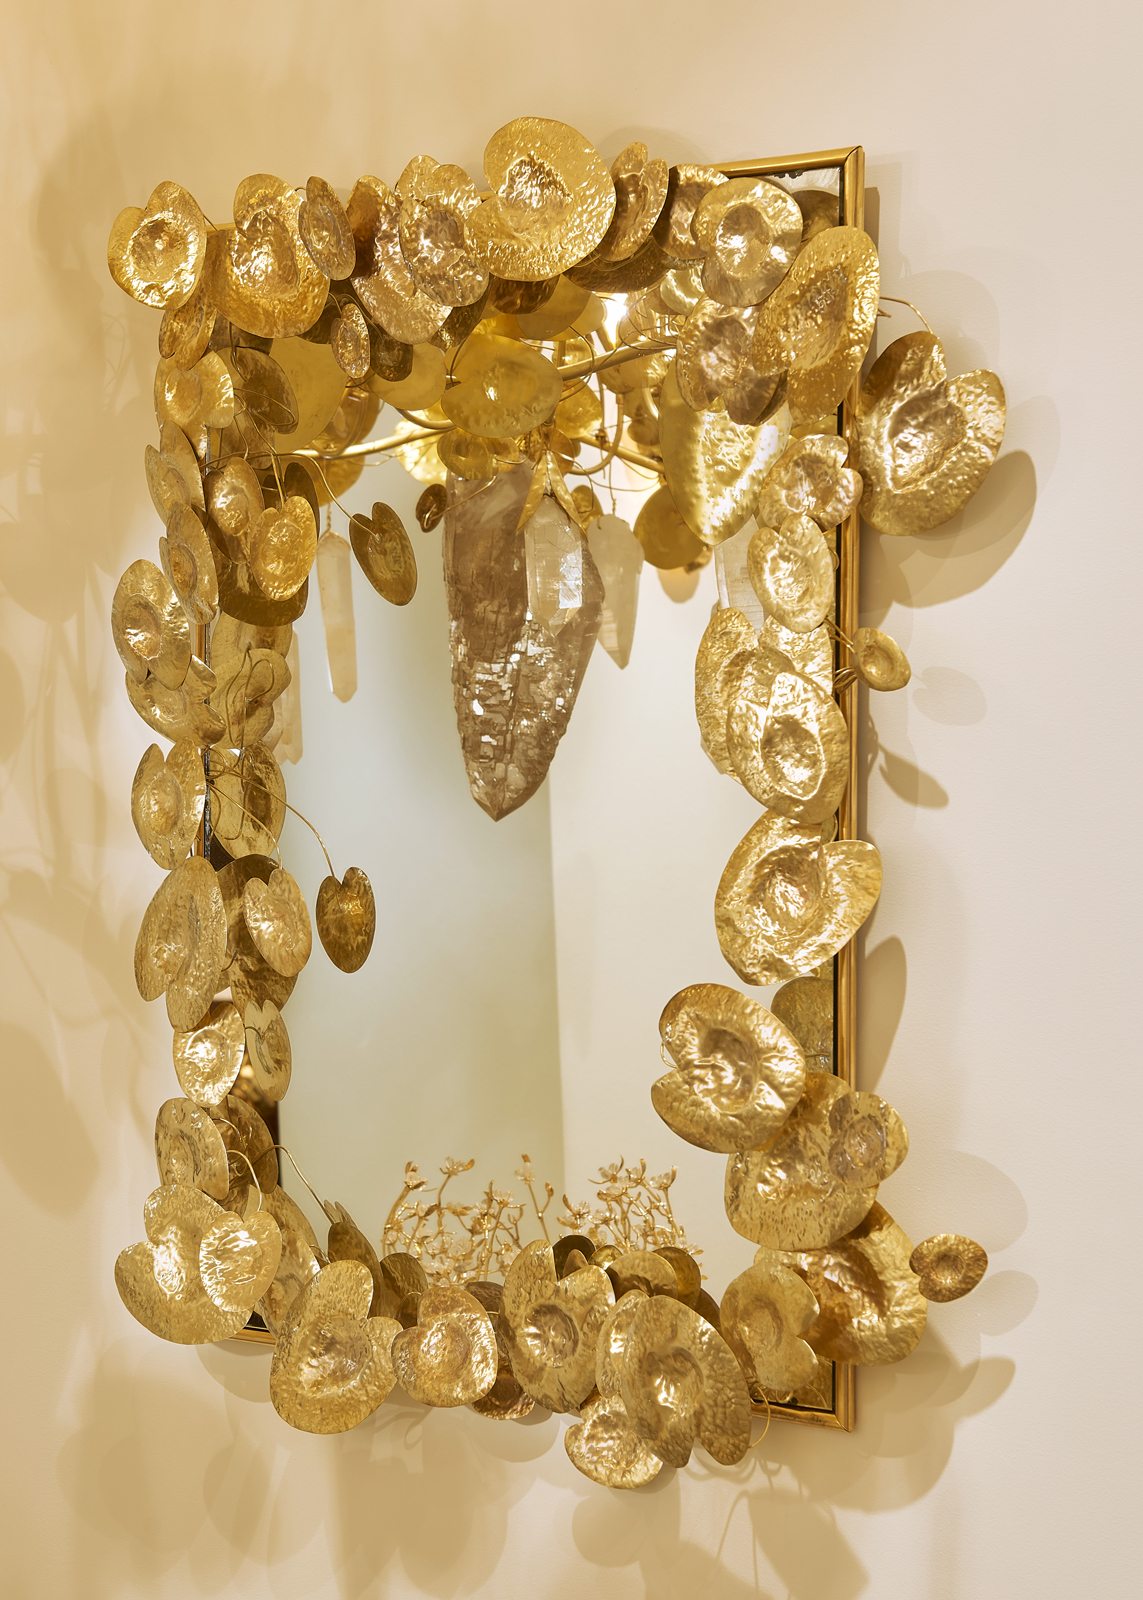 Goossens, l'orfèvre de Gabrielle Chanel et Yves Saint Laurent, ouvre une galerie dédiée à la décoration